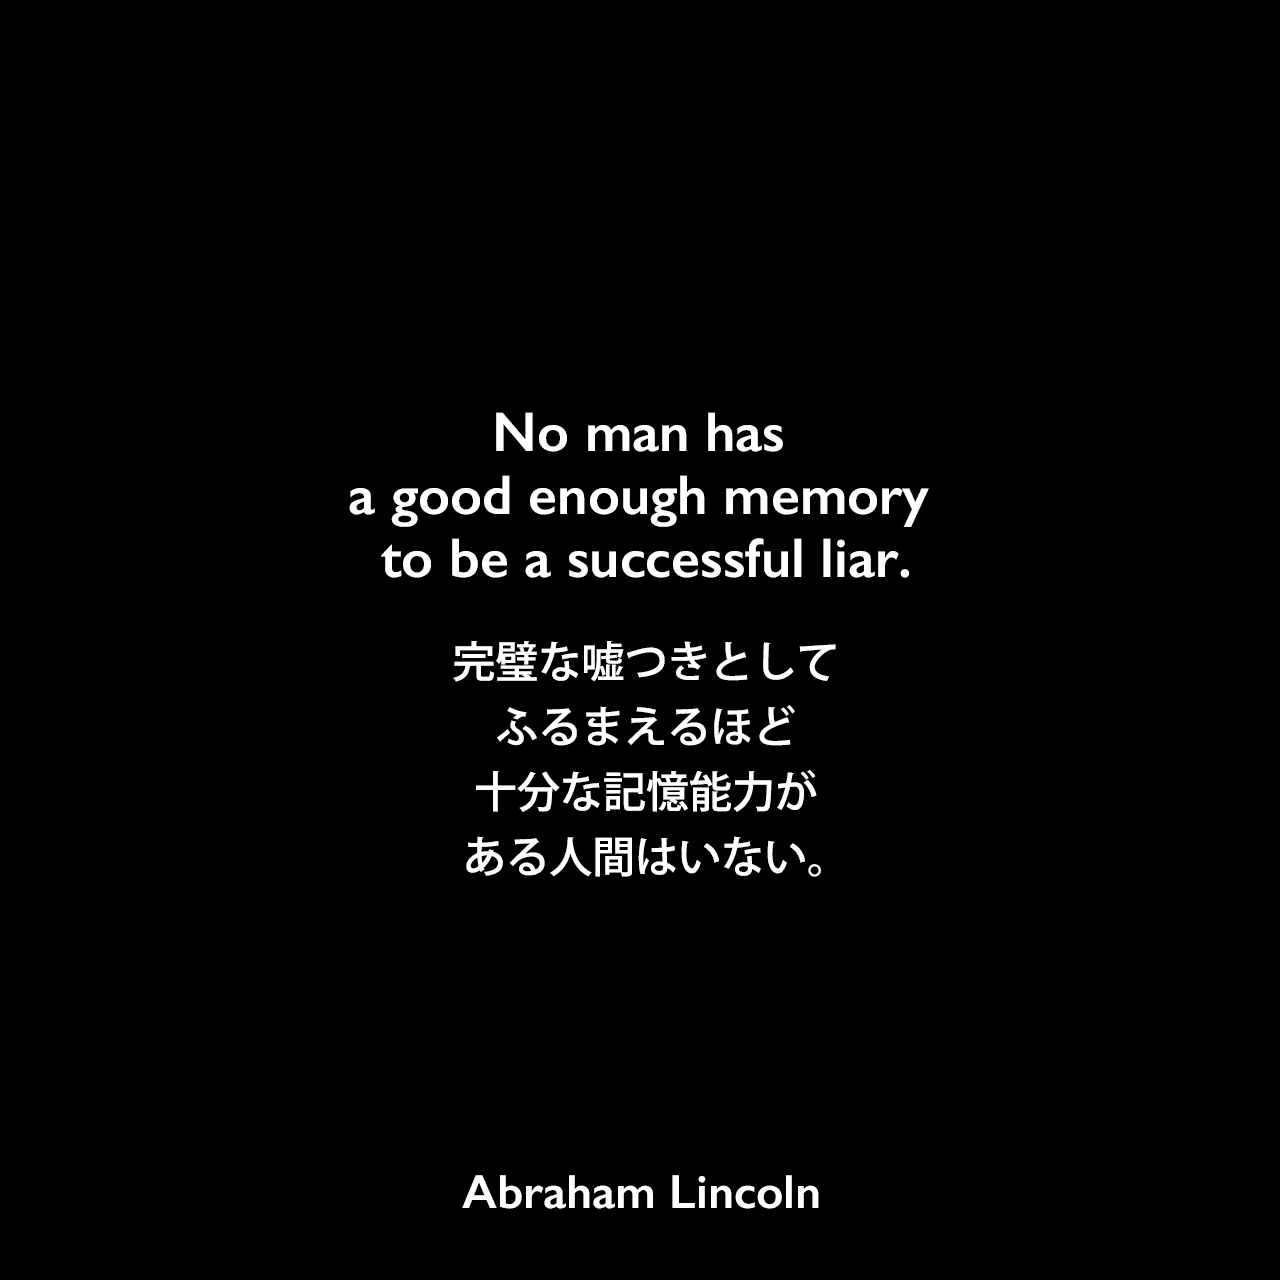 No man has a good enough memory to be a successful liar.完璧な嘘つきとしてふるまえるほど十分な記憶能力がある人間はいない。Abraham Lincoln